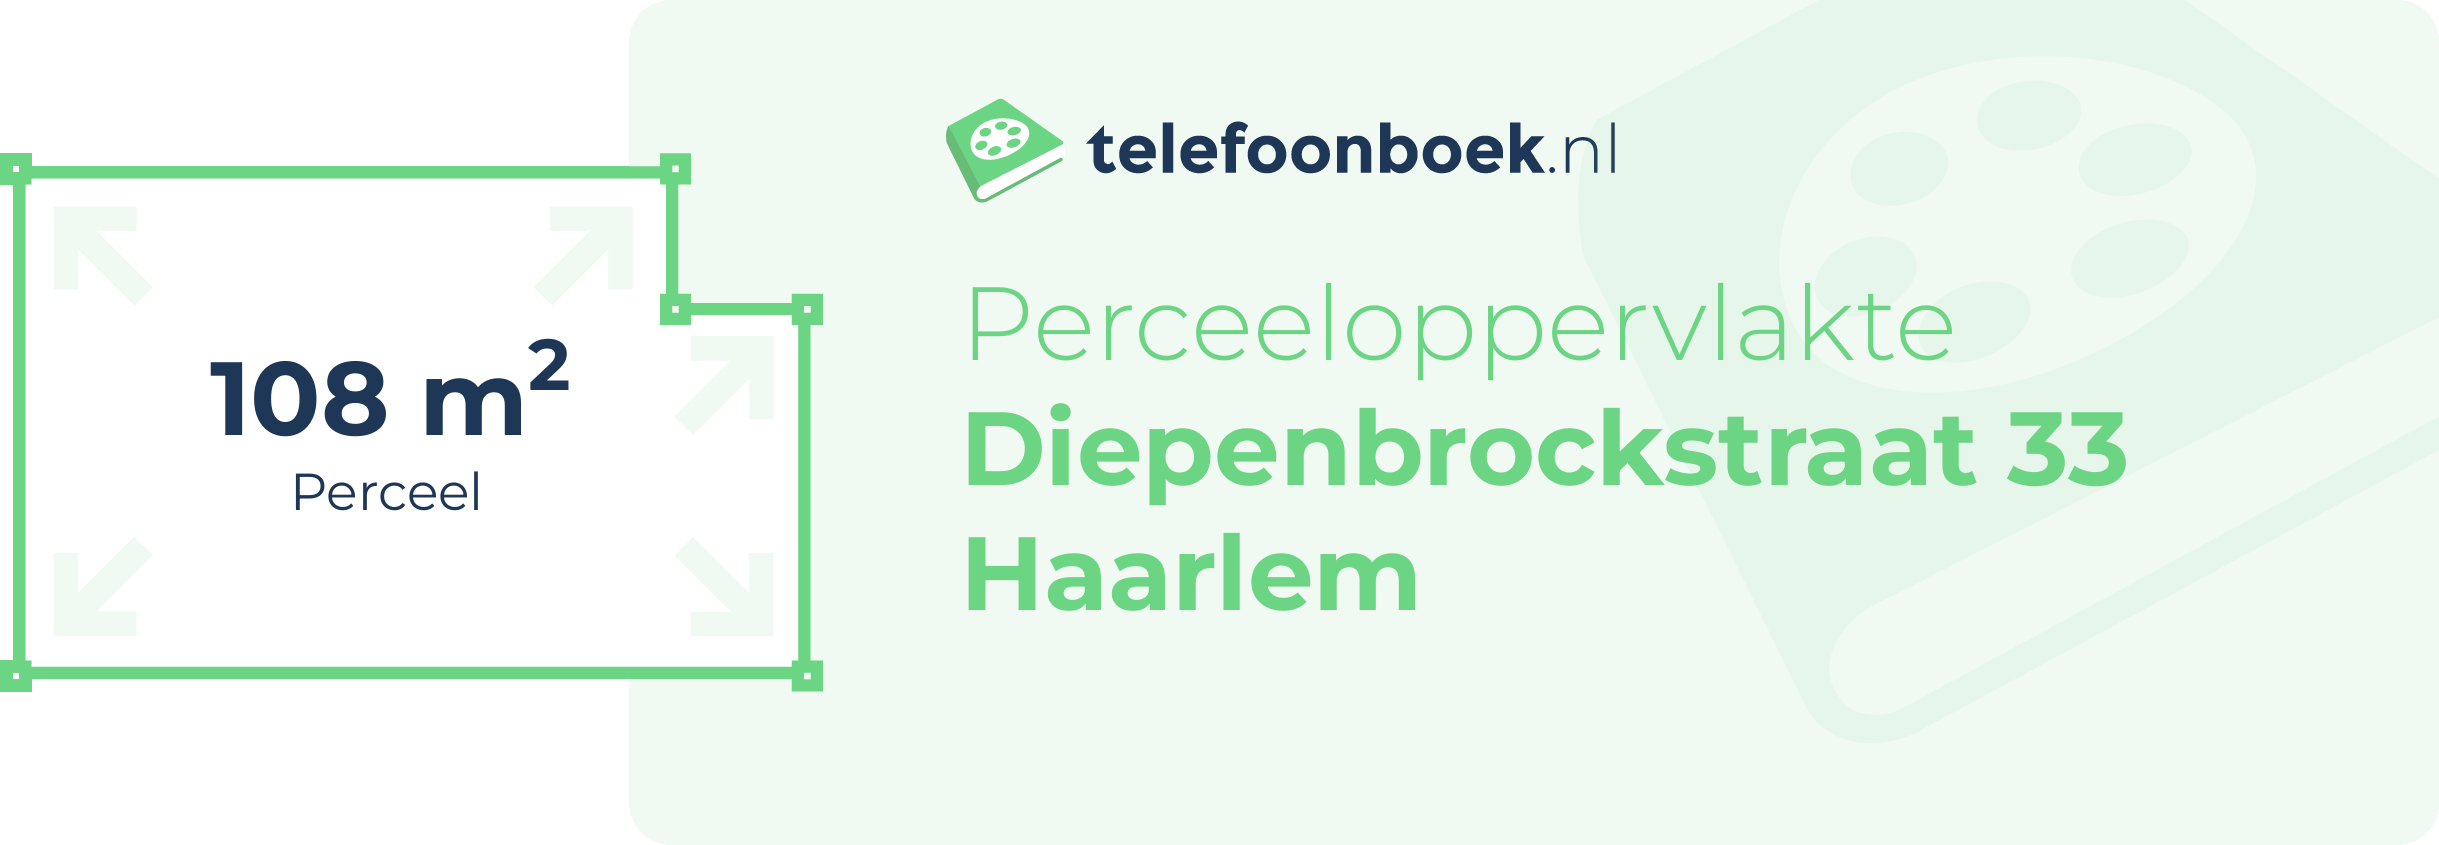 Perceeloppervlakte Diepenbrockstraat 33 Haarlem